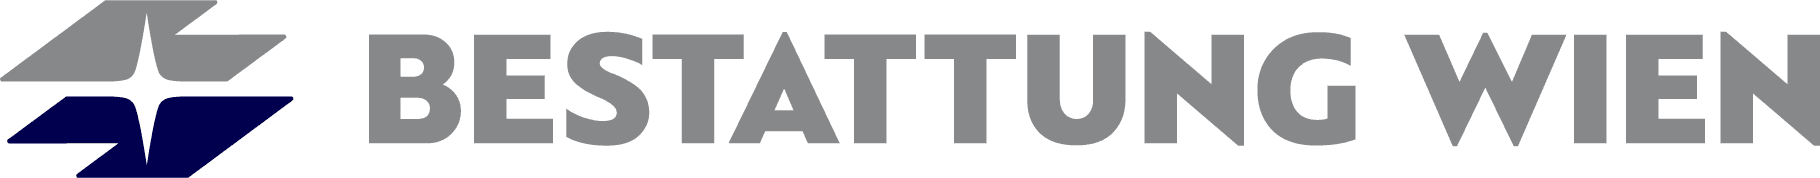 Logo BESTATTUNG WIEN - Kundenservice Alsergrund